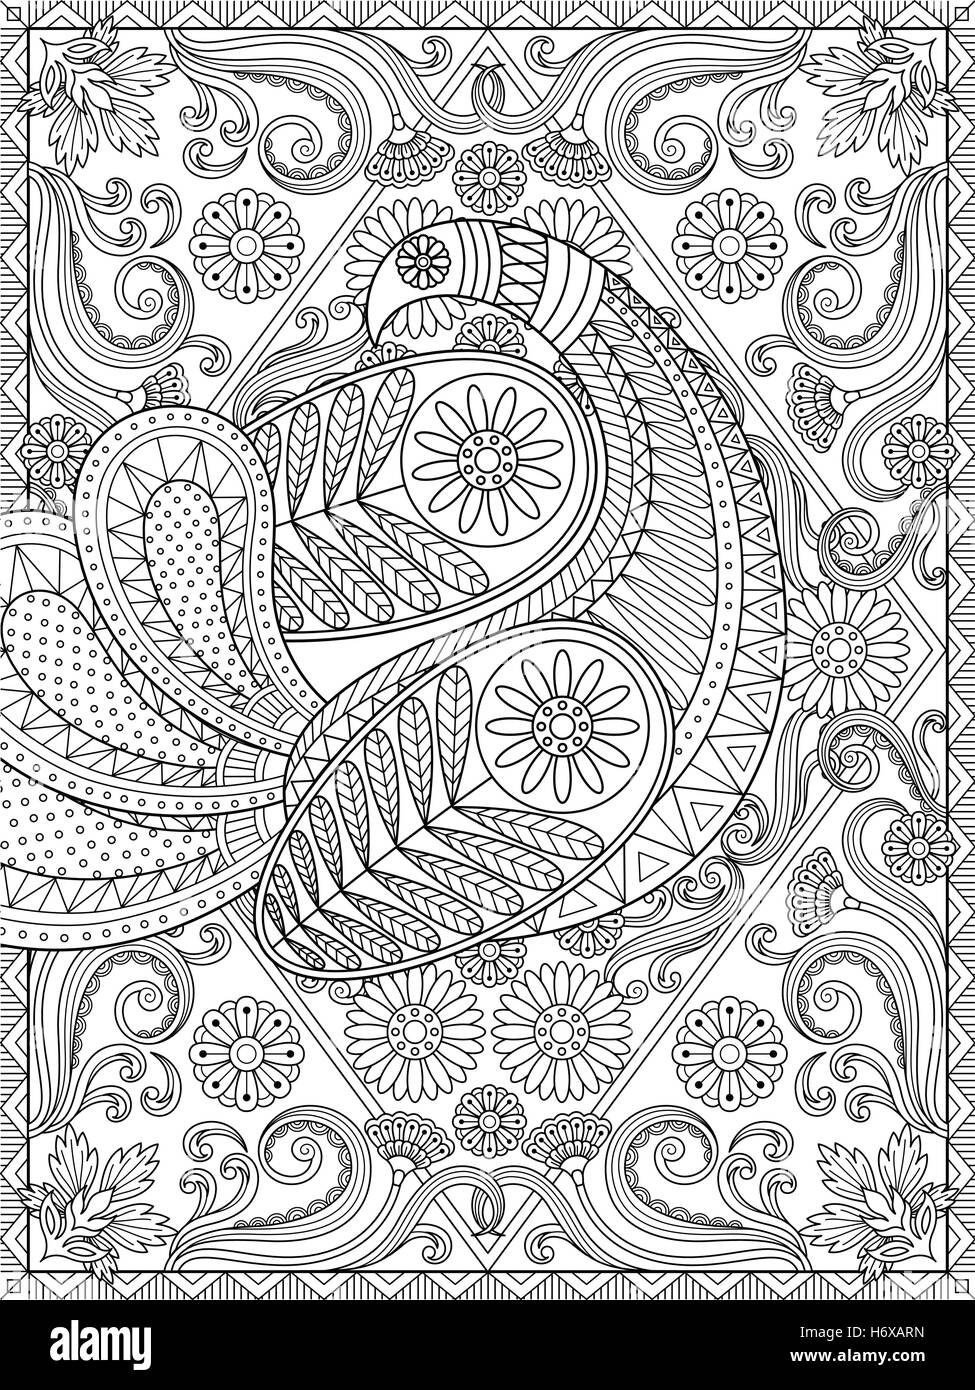 Coloriage adultes splendide, élégante peacock est sa plume, floral et les éléments de géométrie, coloration de soulagement du stress Illustration de Vecteur